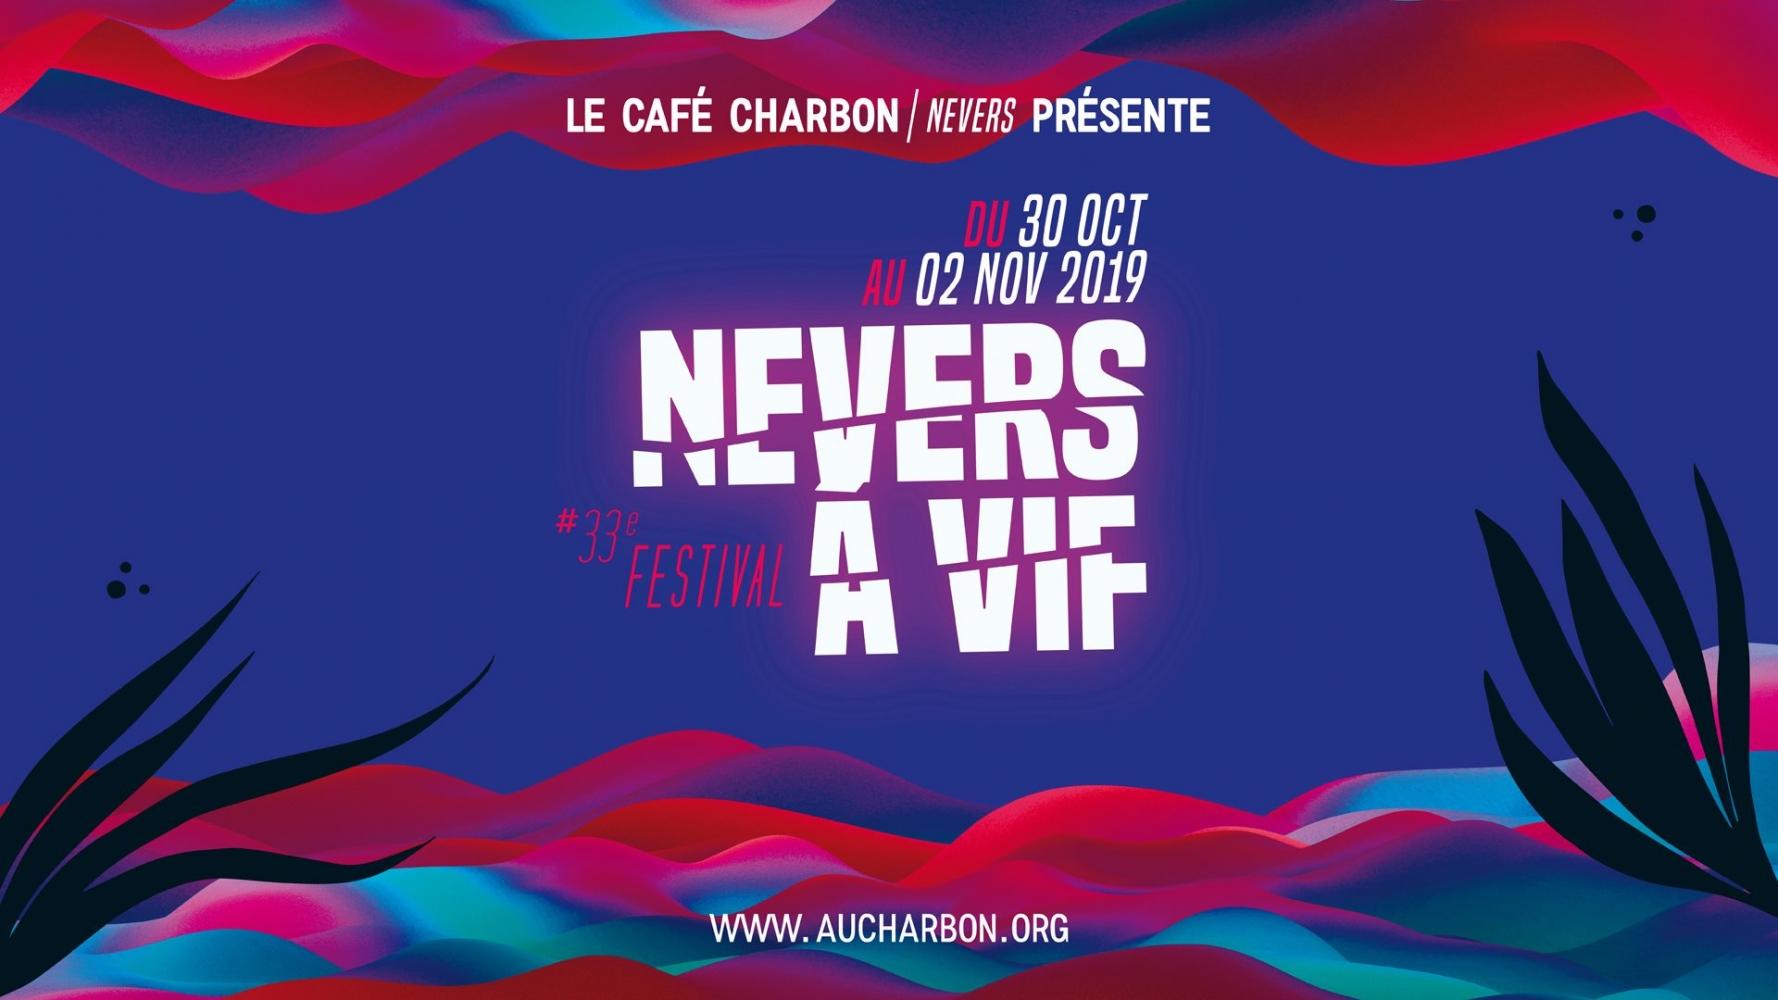 Bac FM radio officielle de la 33ème édition du festival Nevers à vif